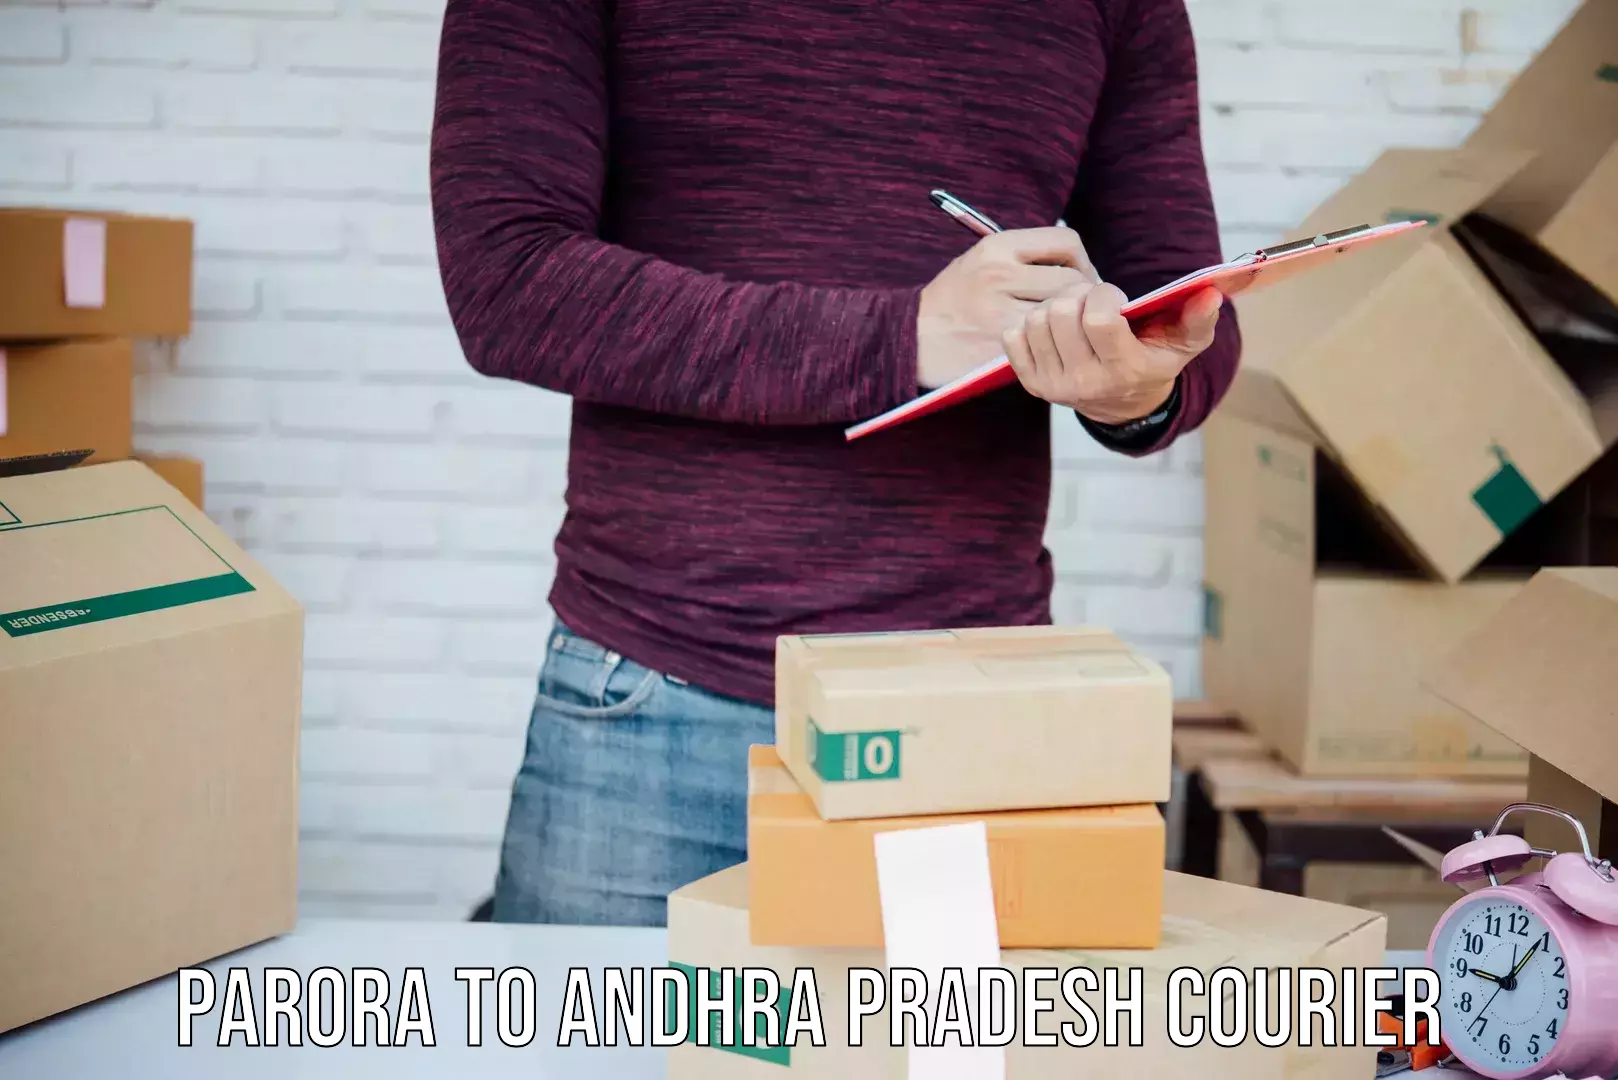 Efficient parcel service Parora to Andhra Pradesh